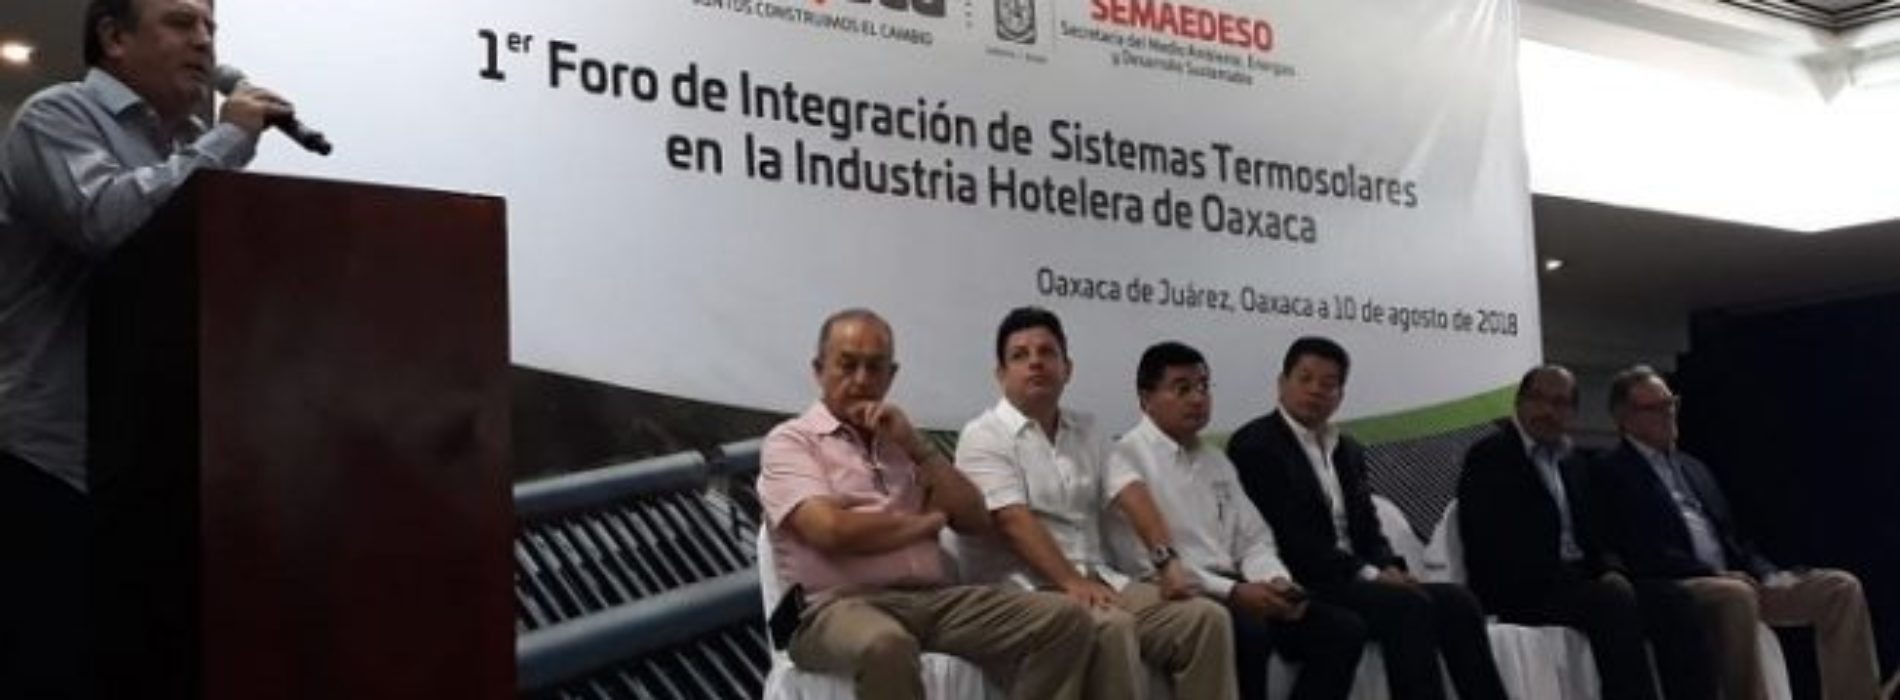 Van hoteleros en Oaxaca por integración de Sistemas
Solares